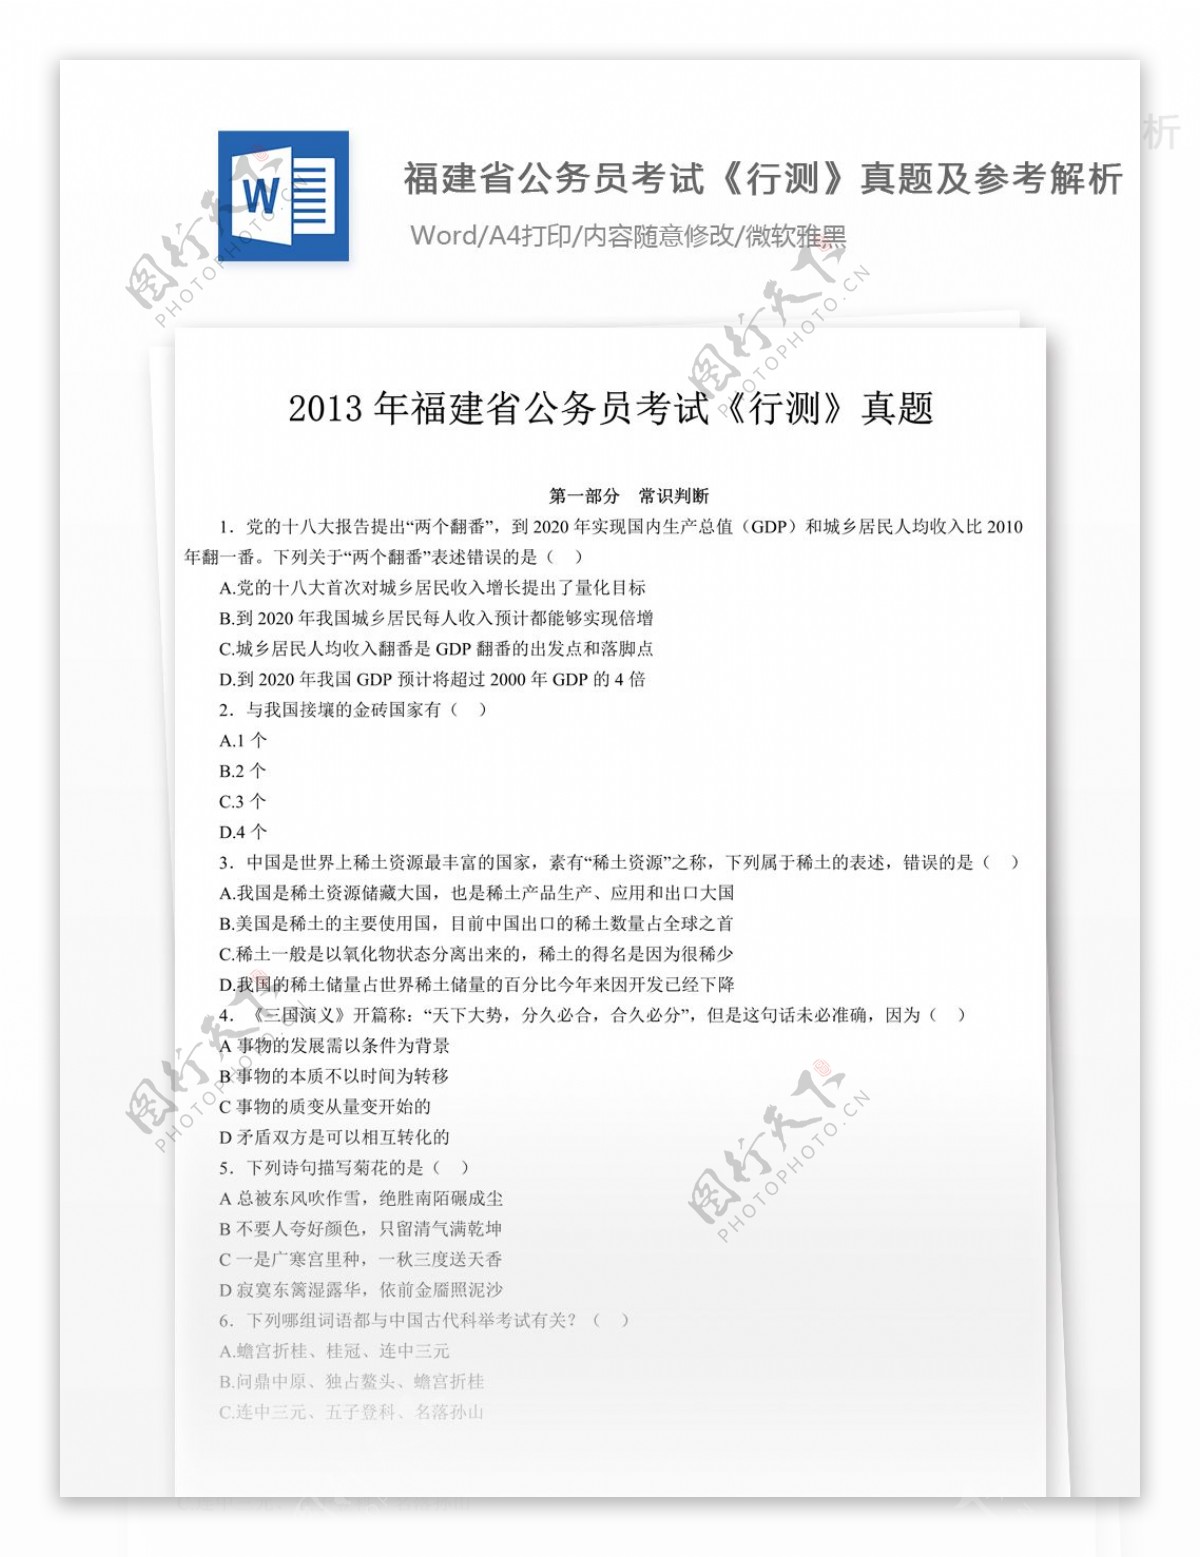 2013年福建省公务员录用考试行测试卷